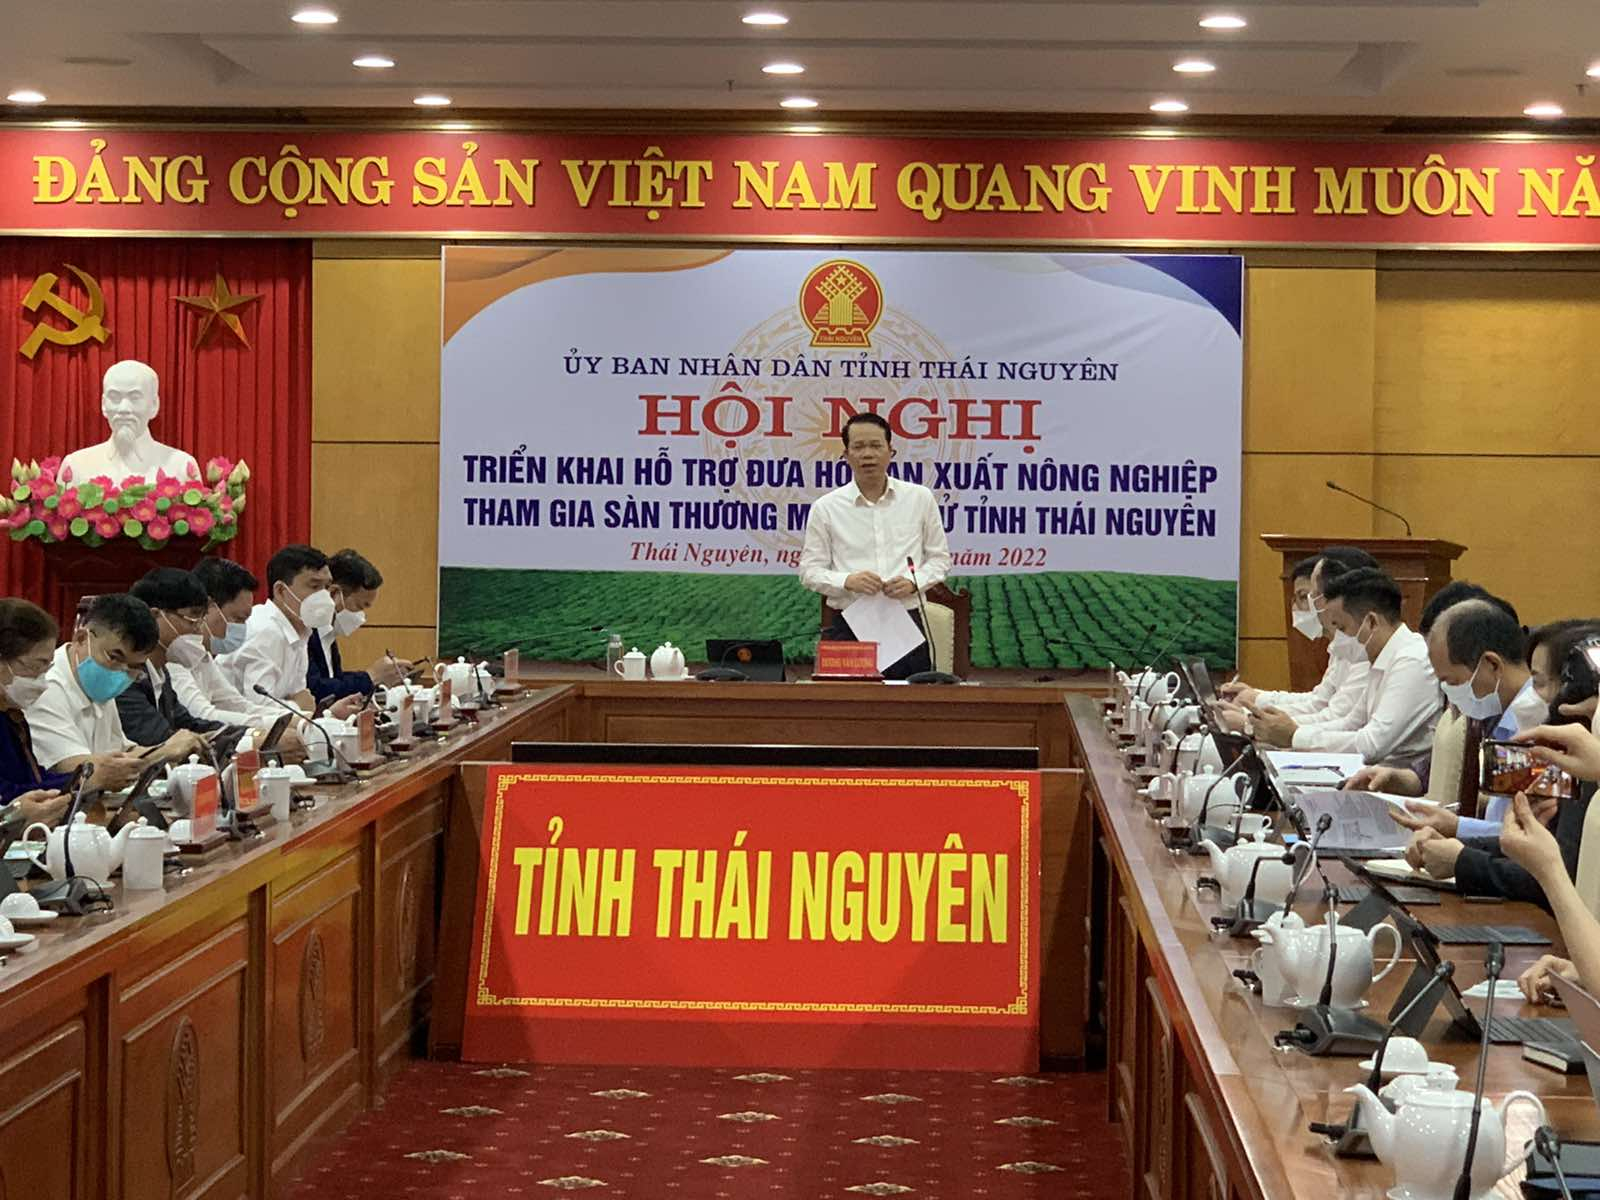 Sáng 18/3, Hội nghị triển khai hỗ trợ hộ sản xuất nông nghiệp tham gia sàn TMĐT diễn ra tại Thái Nguyên, do Phó Chủ tịch UBND tỉnh Thái Nguyên Dương Văn Lượng chủ trì.